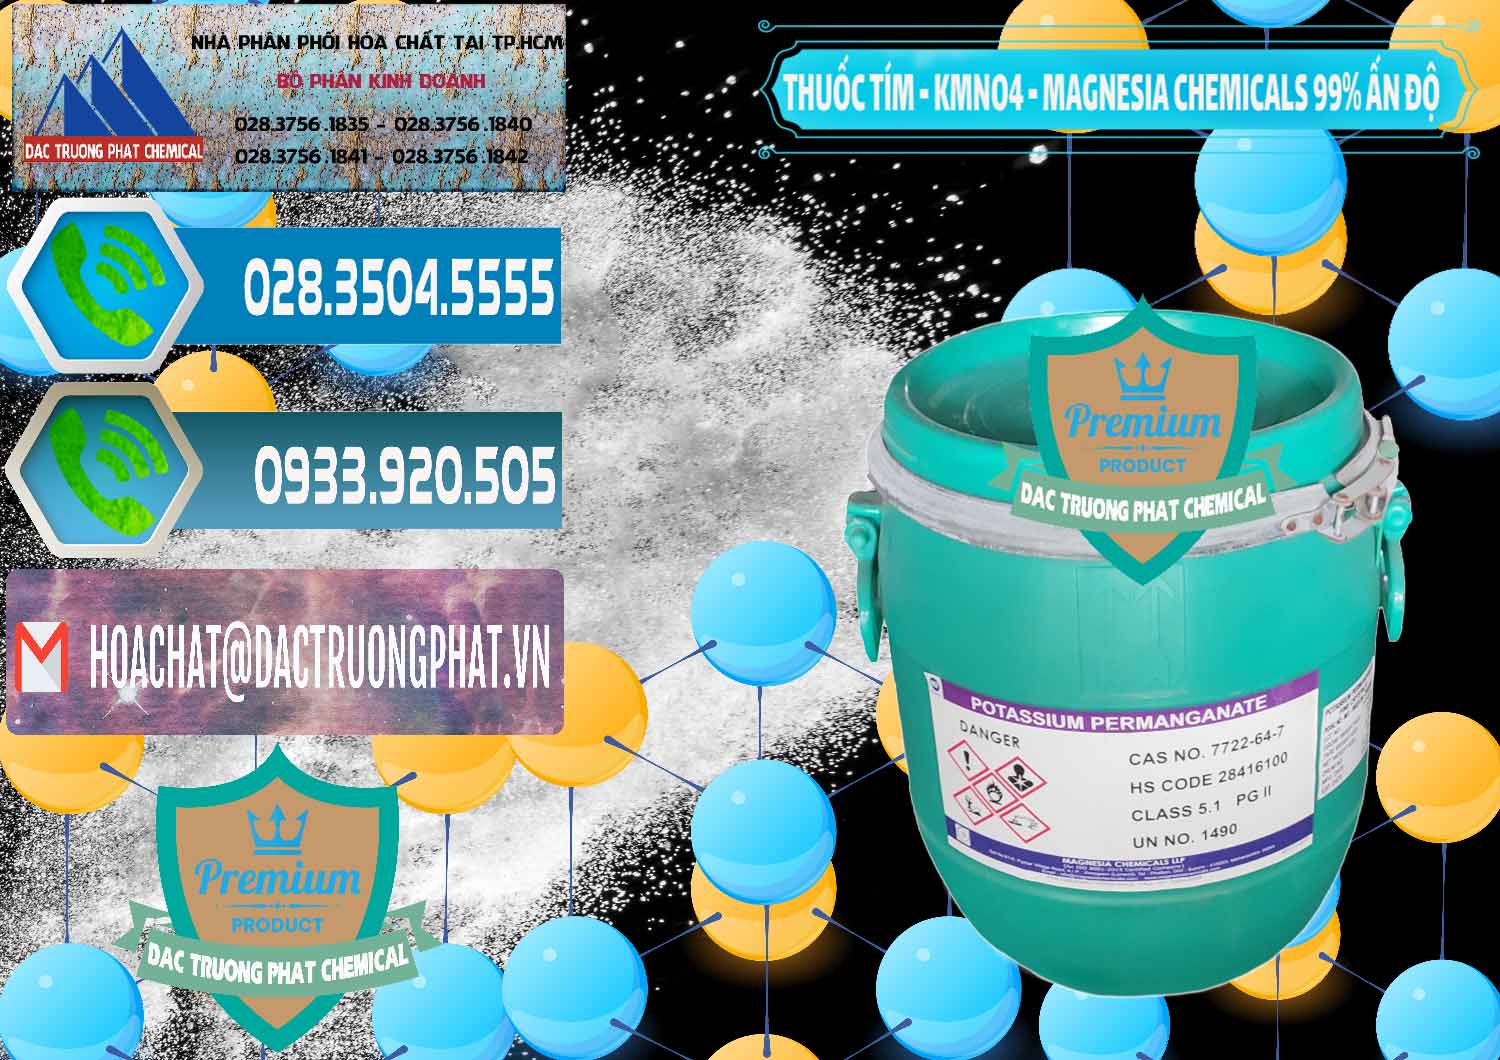 Nơi chuyên phân phối và bán Thuốc Tím - KMNO4 Magnesia Chemicals 99% Ấn Độ India - 0251 - Cty chuyên phân phối ( bán ) hóa chất tại TP.HCM - congtyhoachat.net